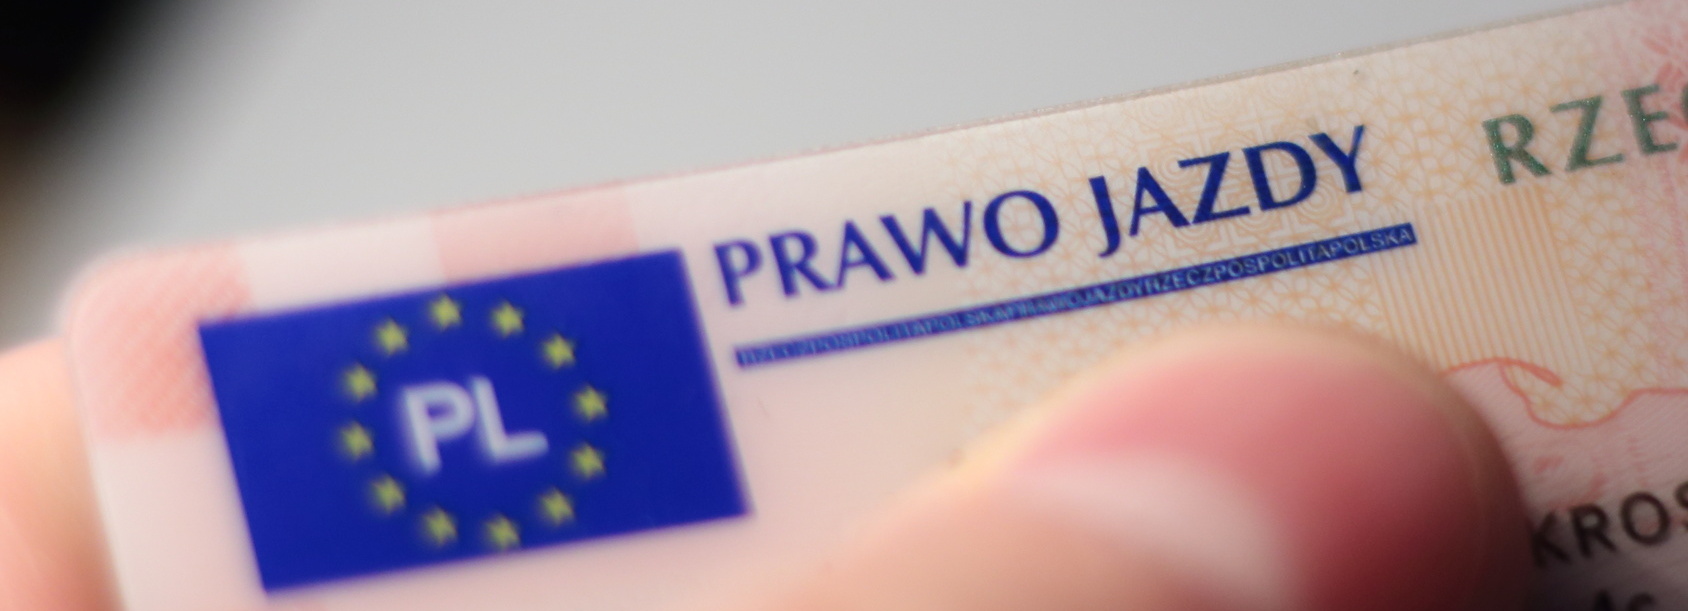 Wymiana ukraińskiego prawa jazdy na polskie 2020 r.